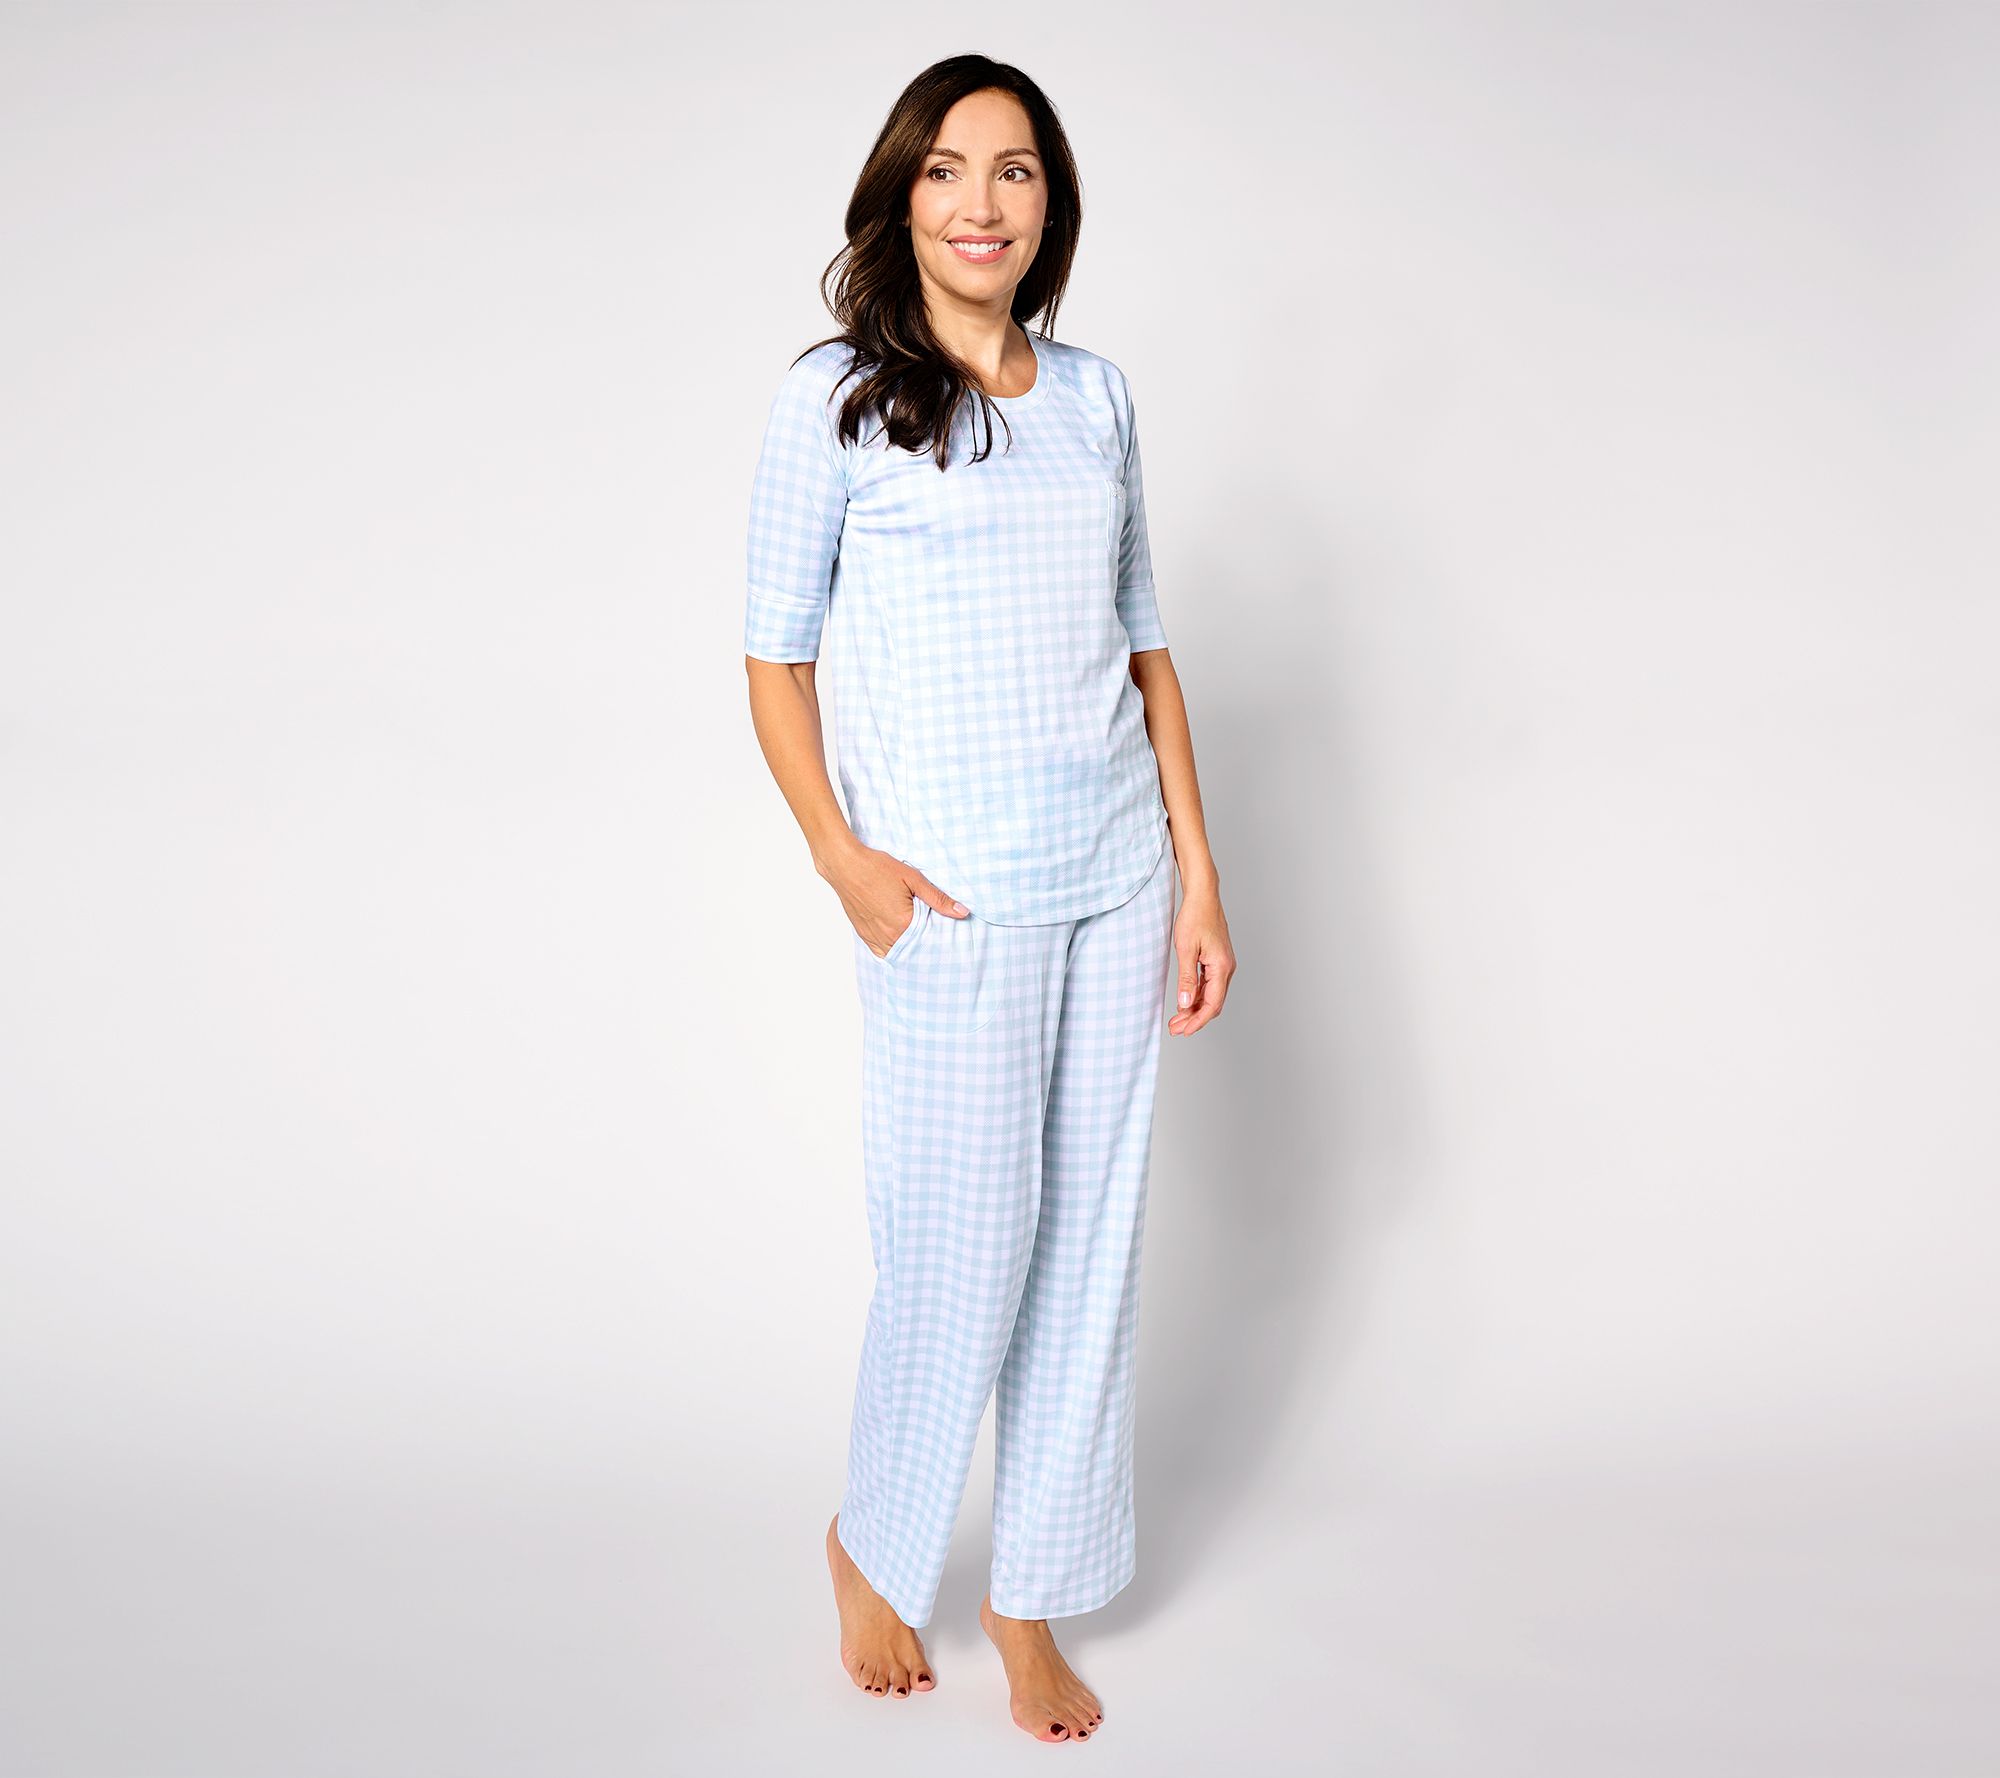 Women's Sleepwear & Pajamas